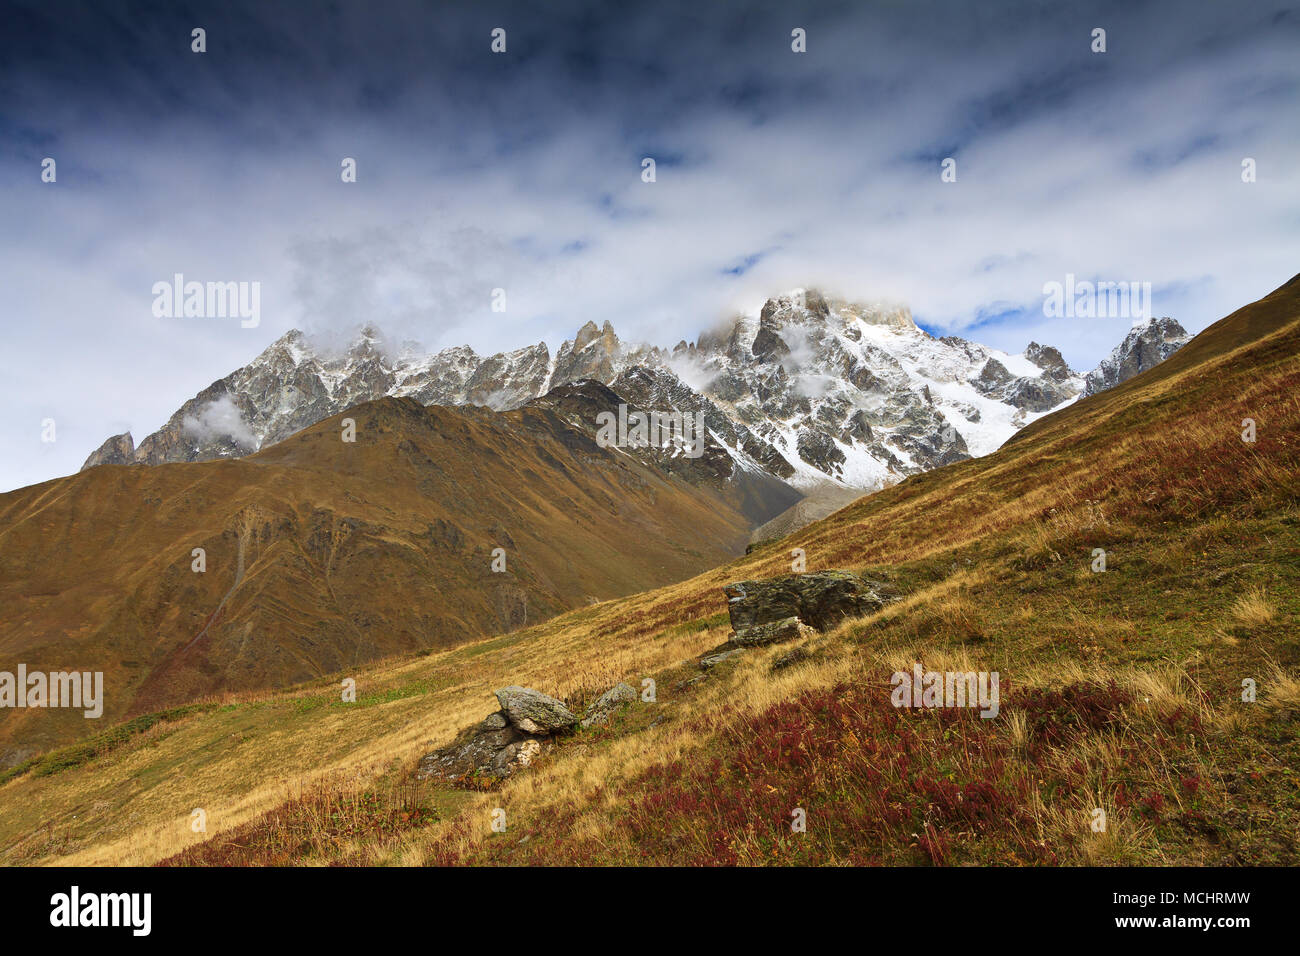 Montare Ushba è uno dei più notevoli picchi delle montagne del Caucaso. Si trova nella regione di Svaneti della Georgia. Foto Stock